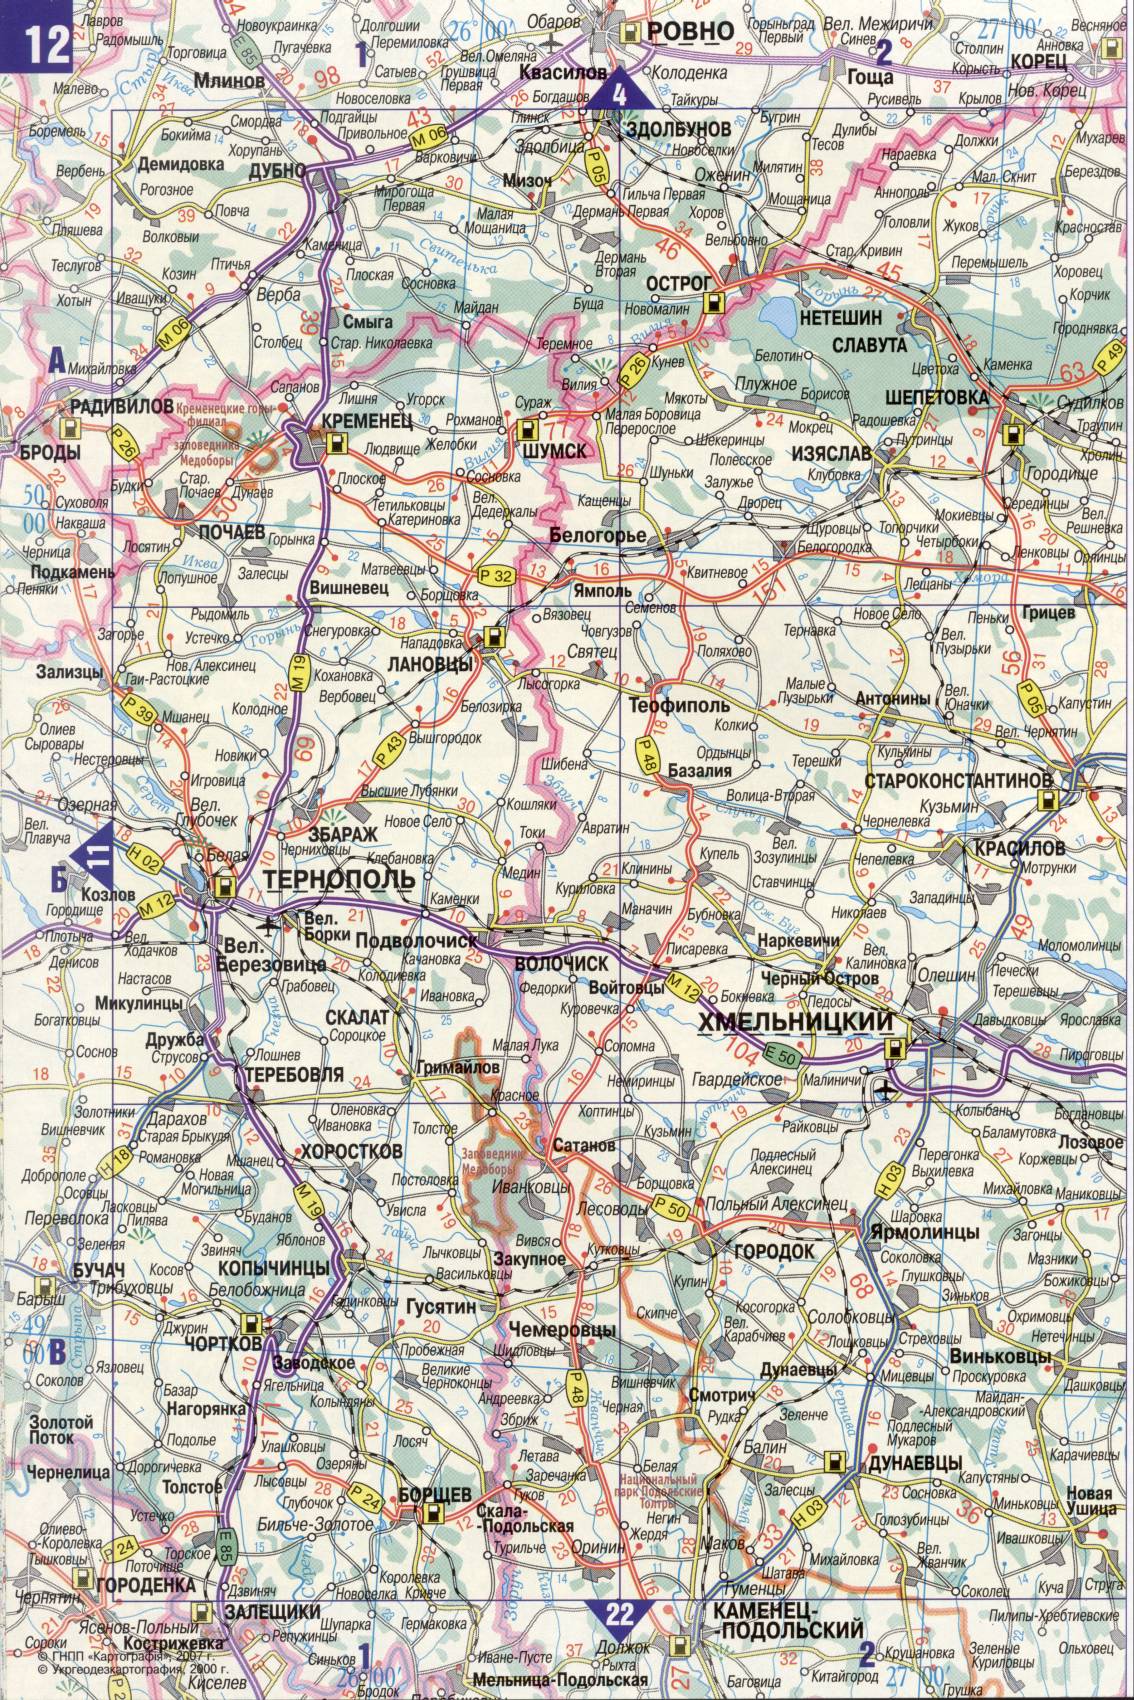 Karte der Ukraine. Detaillierte Straßenkarte der Ukraine avtomobilnog Satin. kostenlos herunterladen, C1